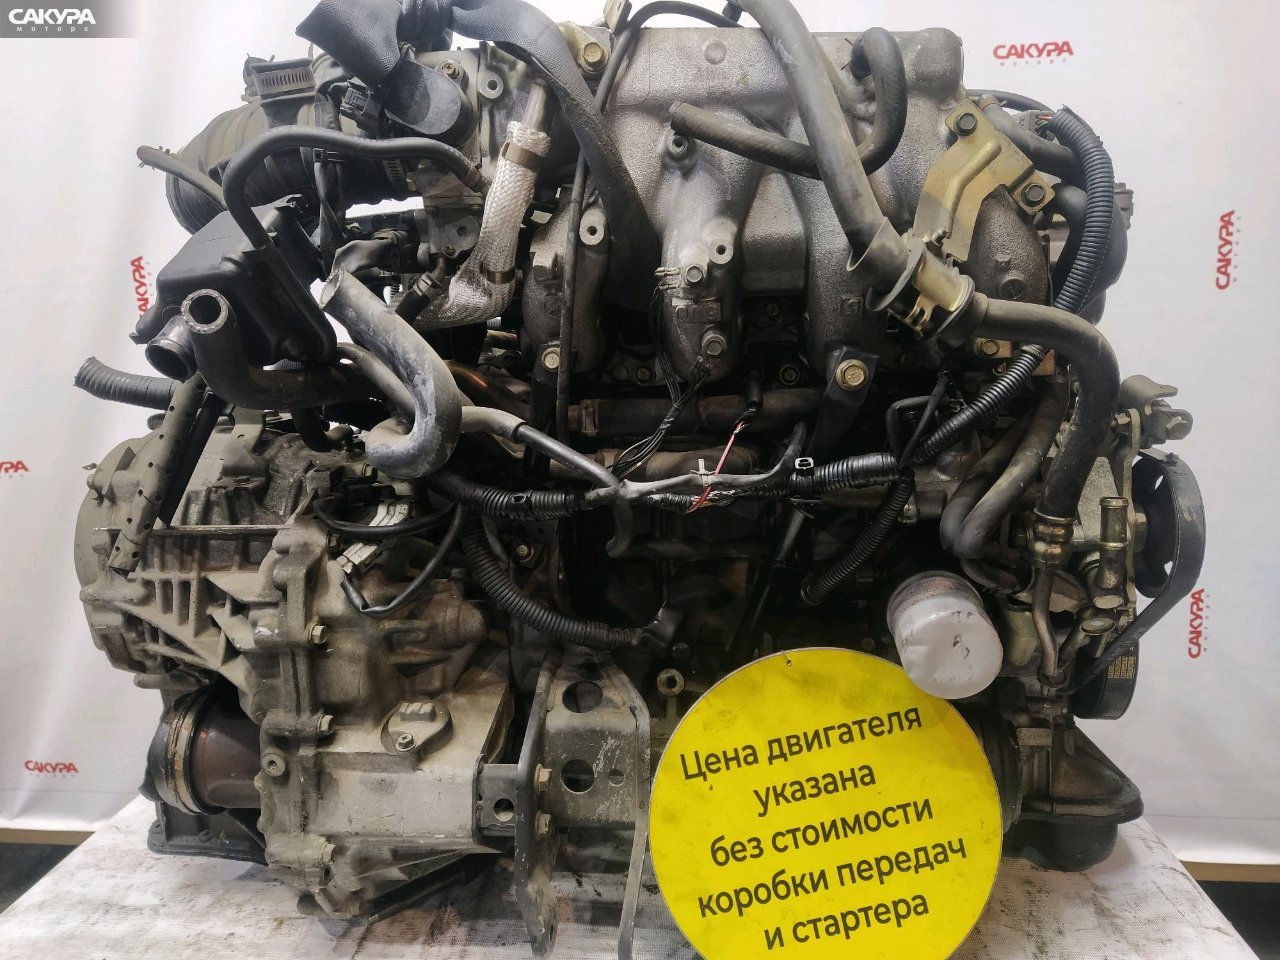 Двигатель Nissan Serena PC24 SR20DE: купить в Сакура Красноярск.